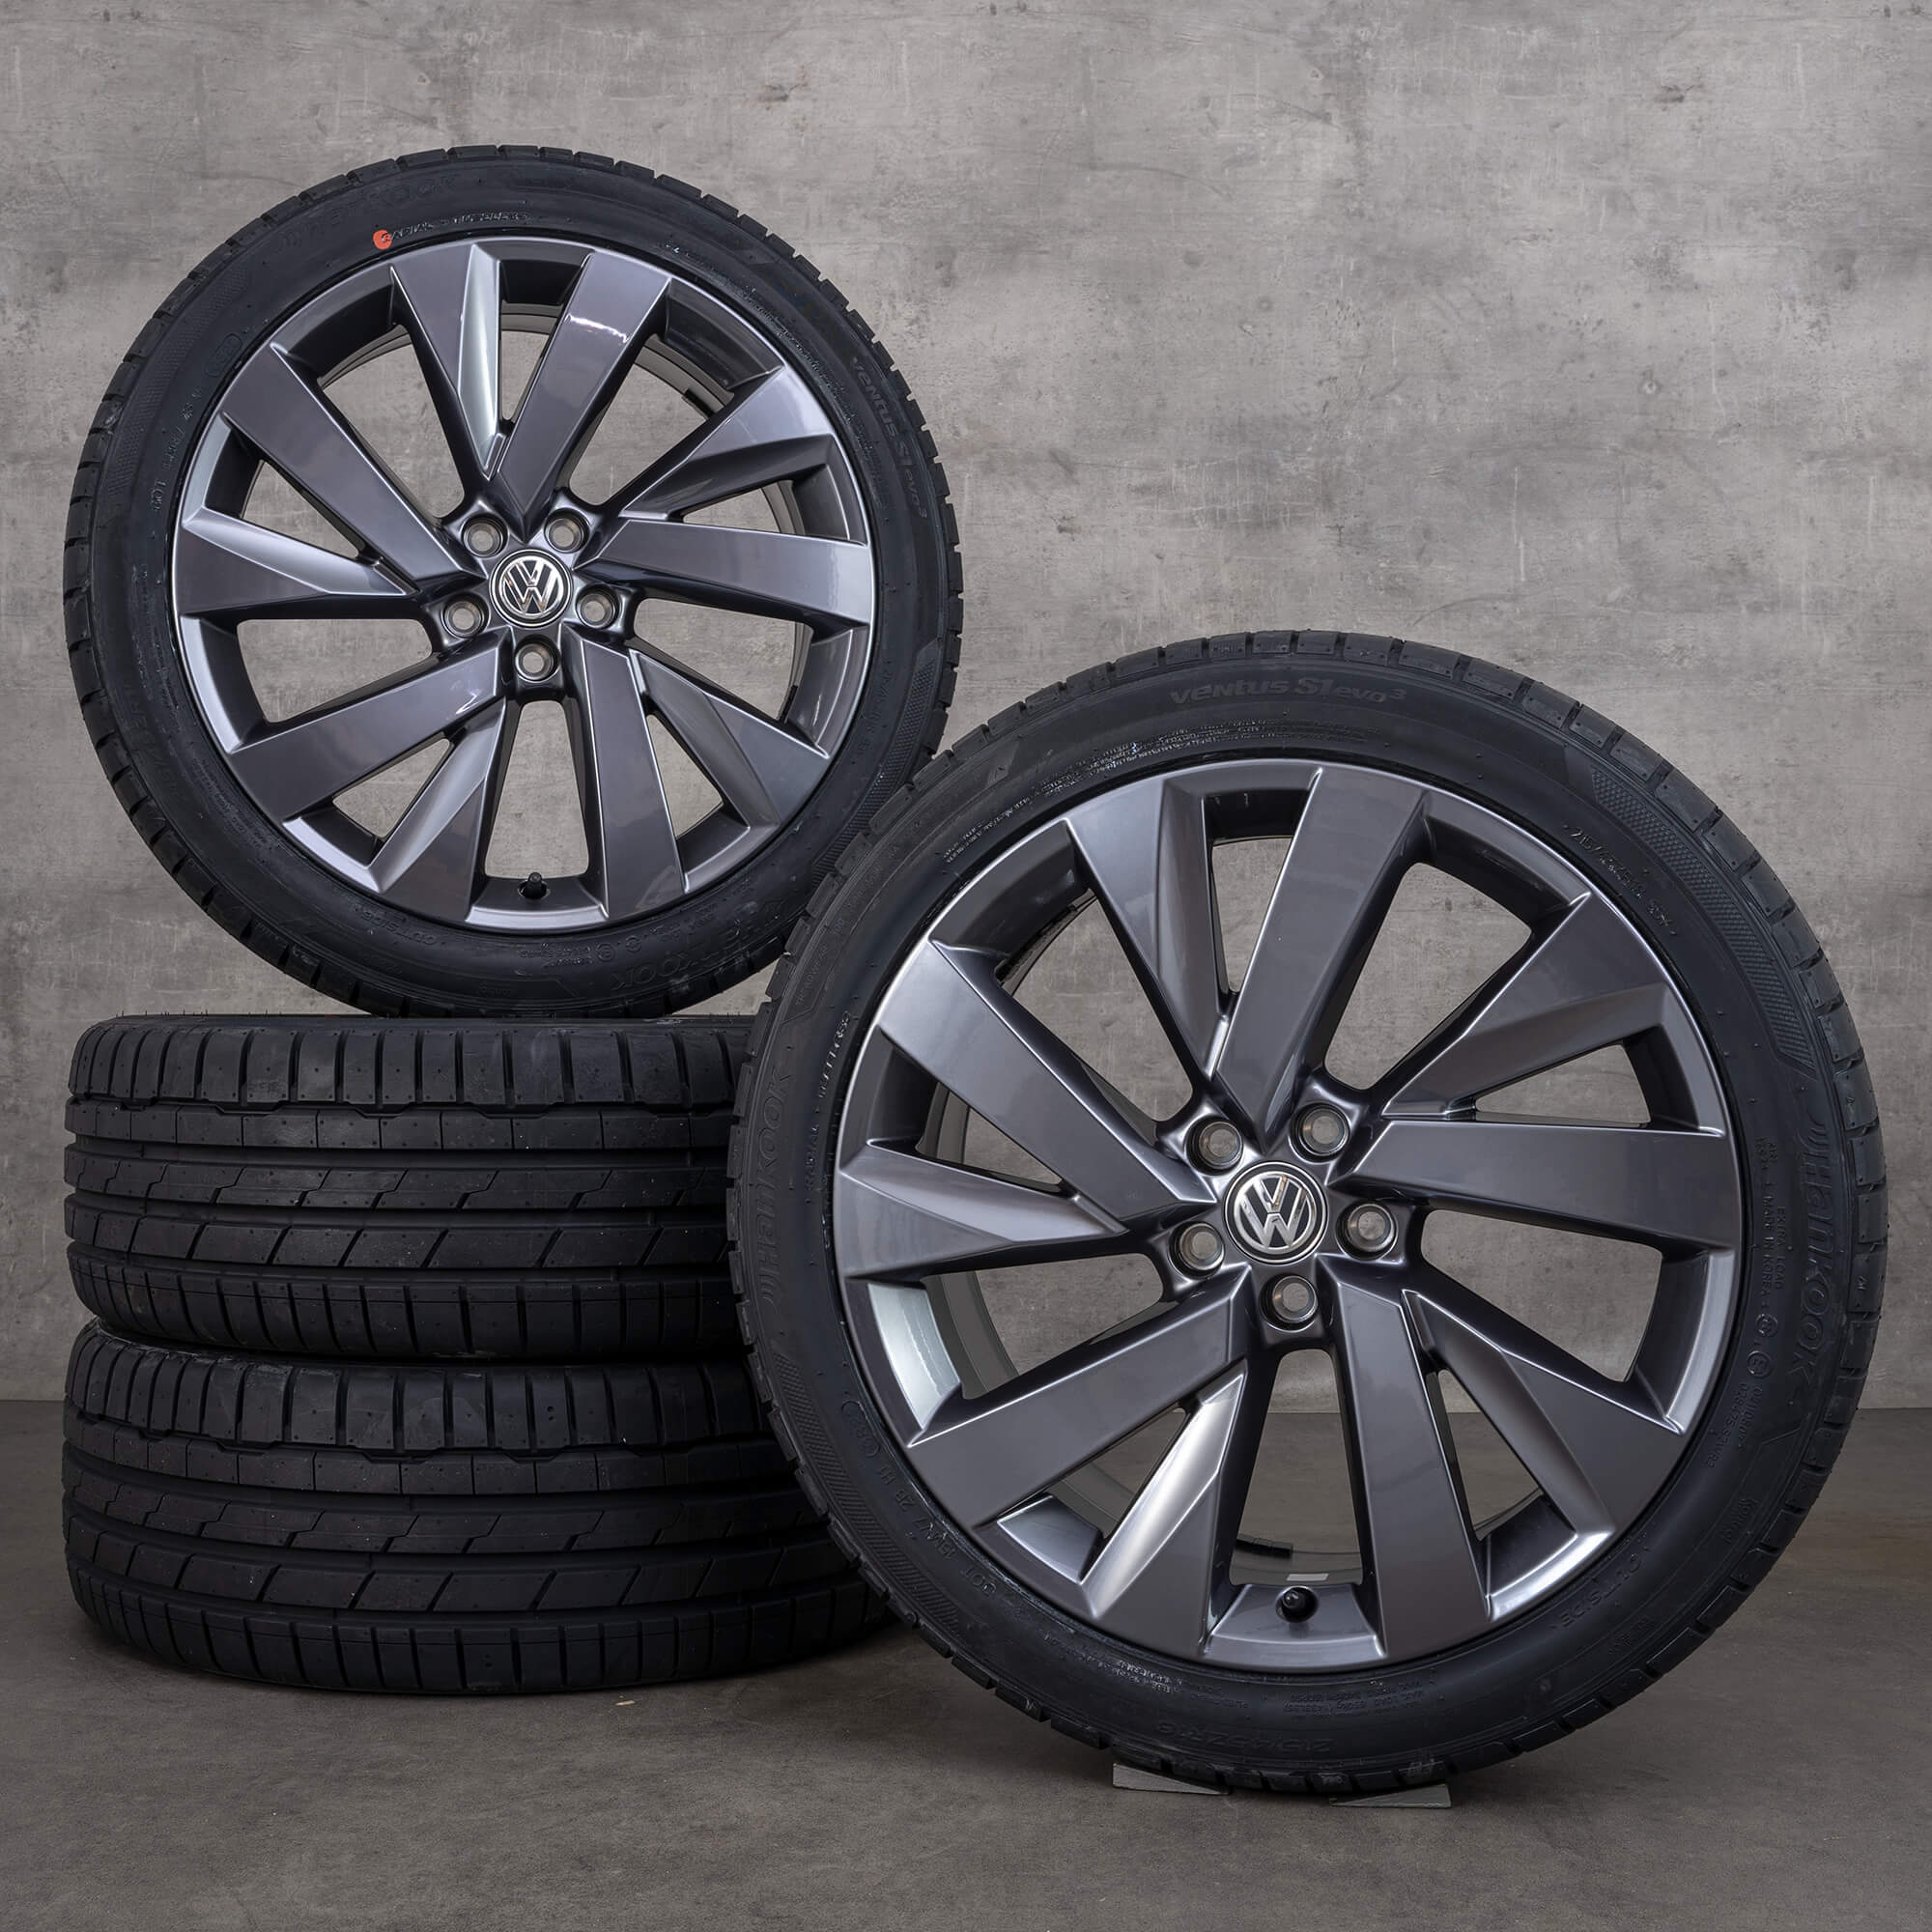 Llantas de 18 pulgadas VW T-Cross C1 Funchal neumáticos verano ruedas